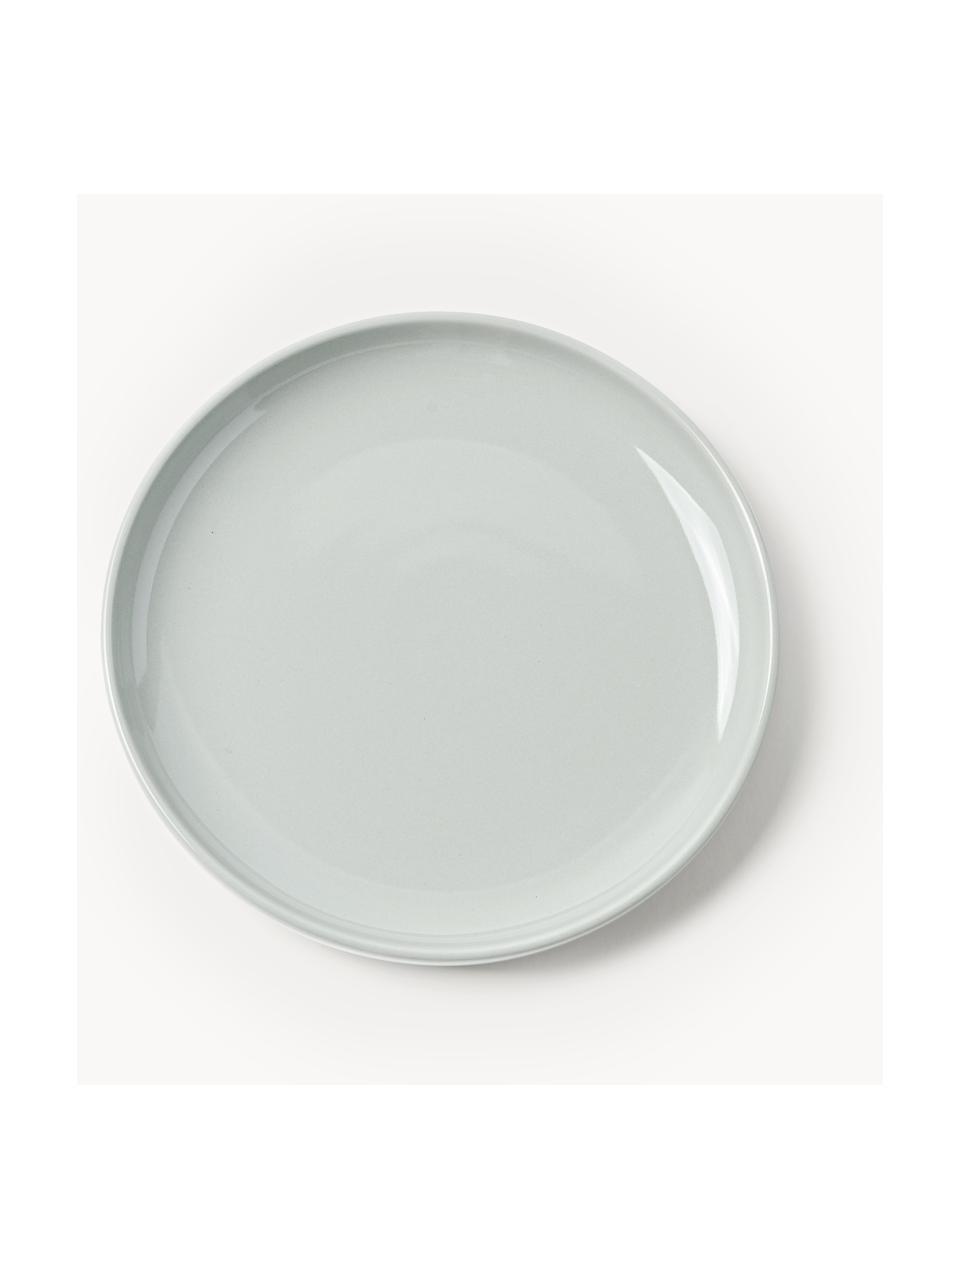 Porzellan-Frühstückteller Nessa, 4 Stück, Hochwertiges Hartporzellan, glasiert, Hellgrau, glänzend, Ø 19 cm